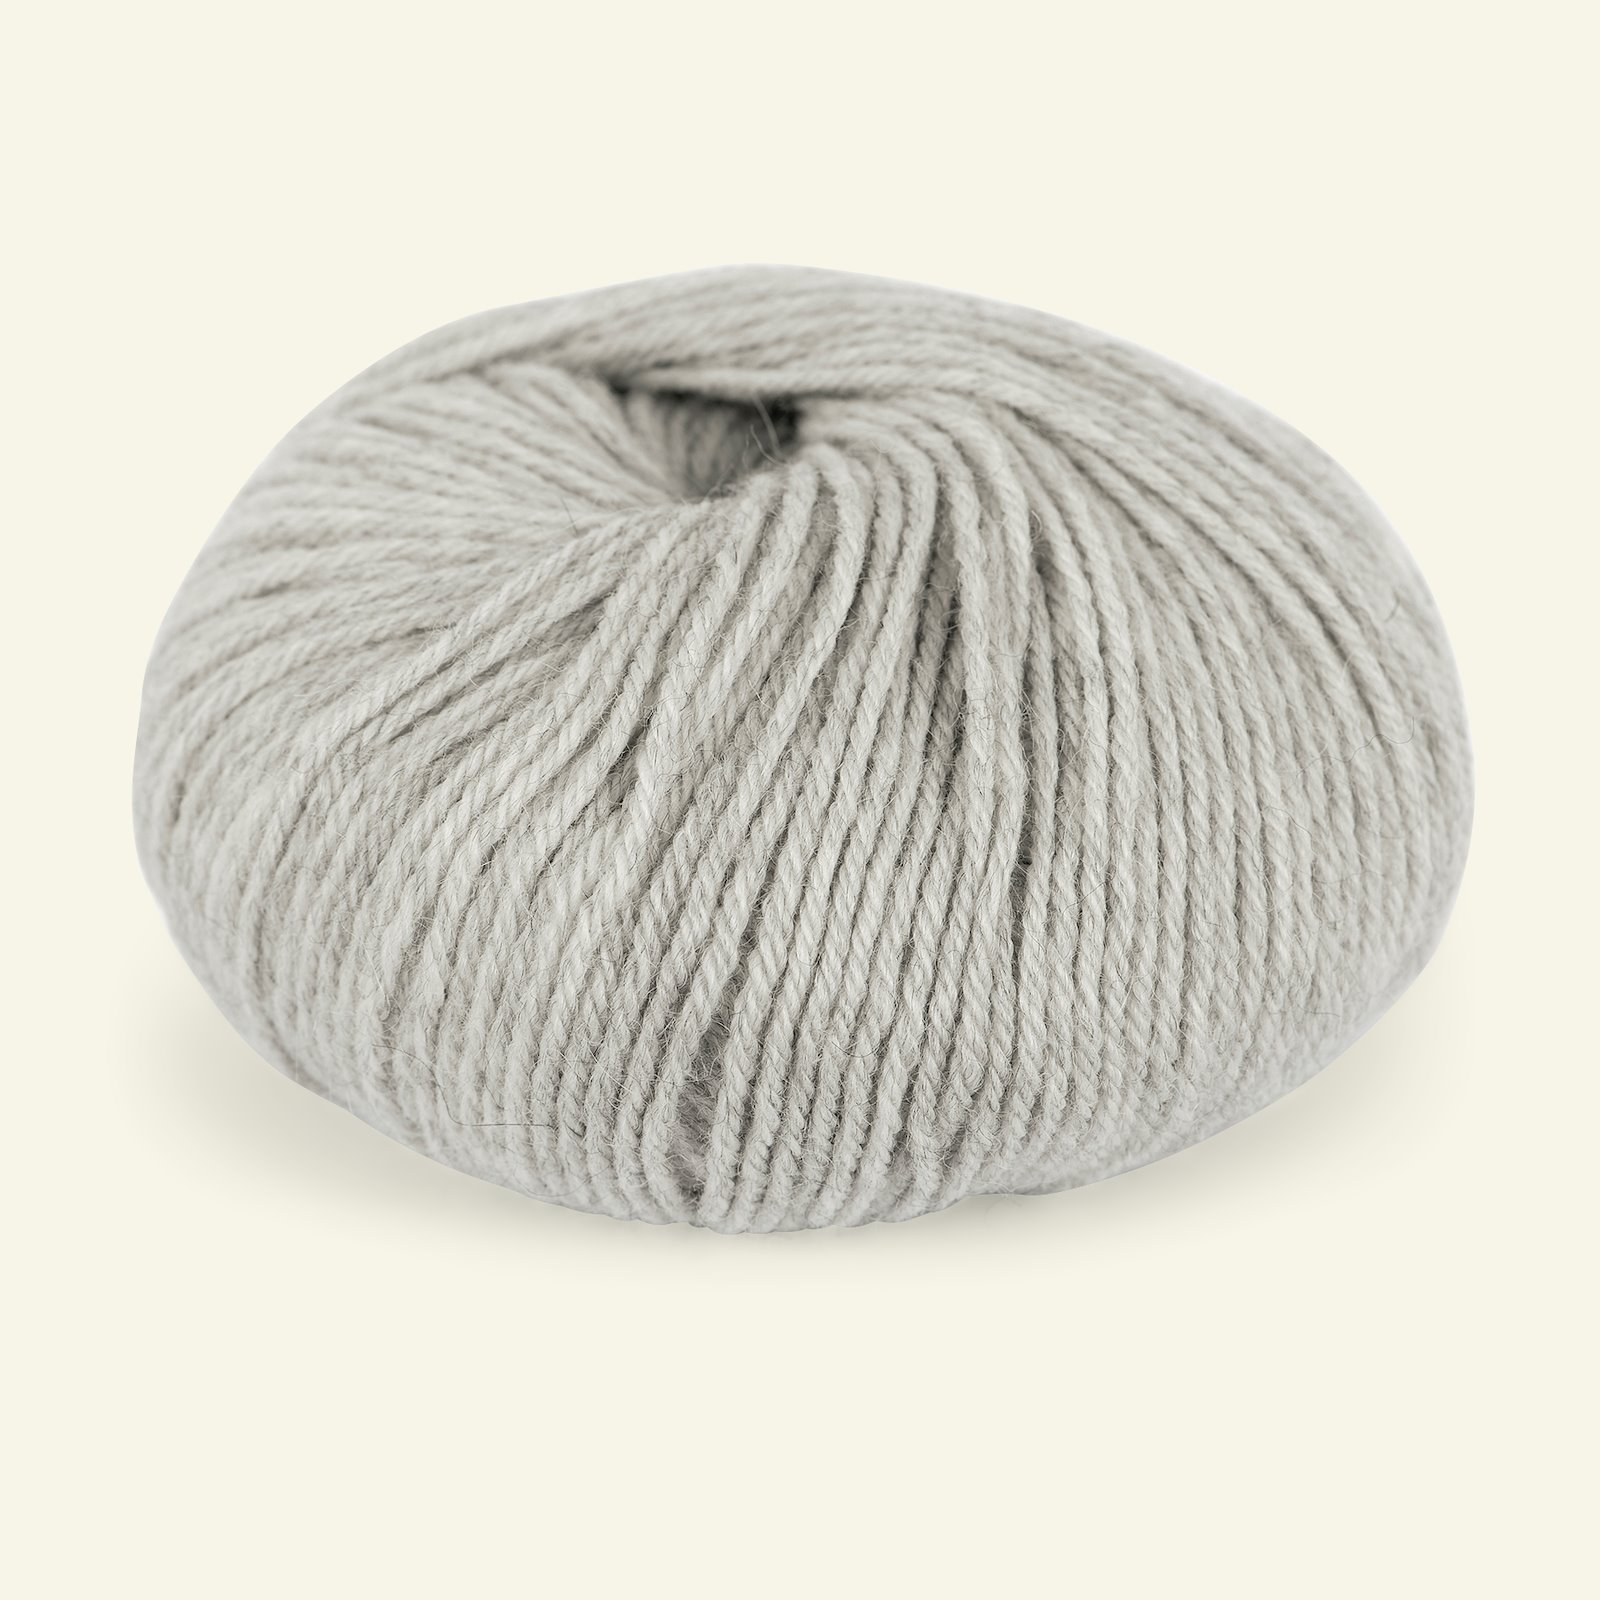 Du Store Alpakka, alpaca merino mixed yarn "Sterk", light grey mel. (841) 90000672_pack_b